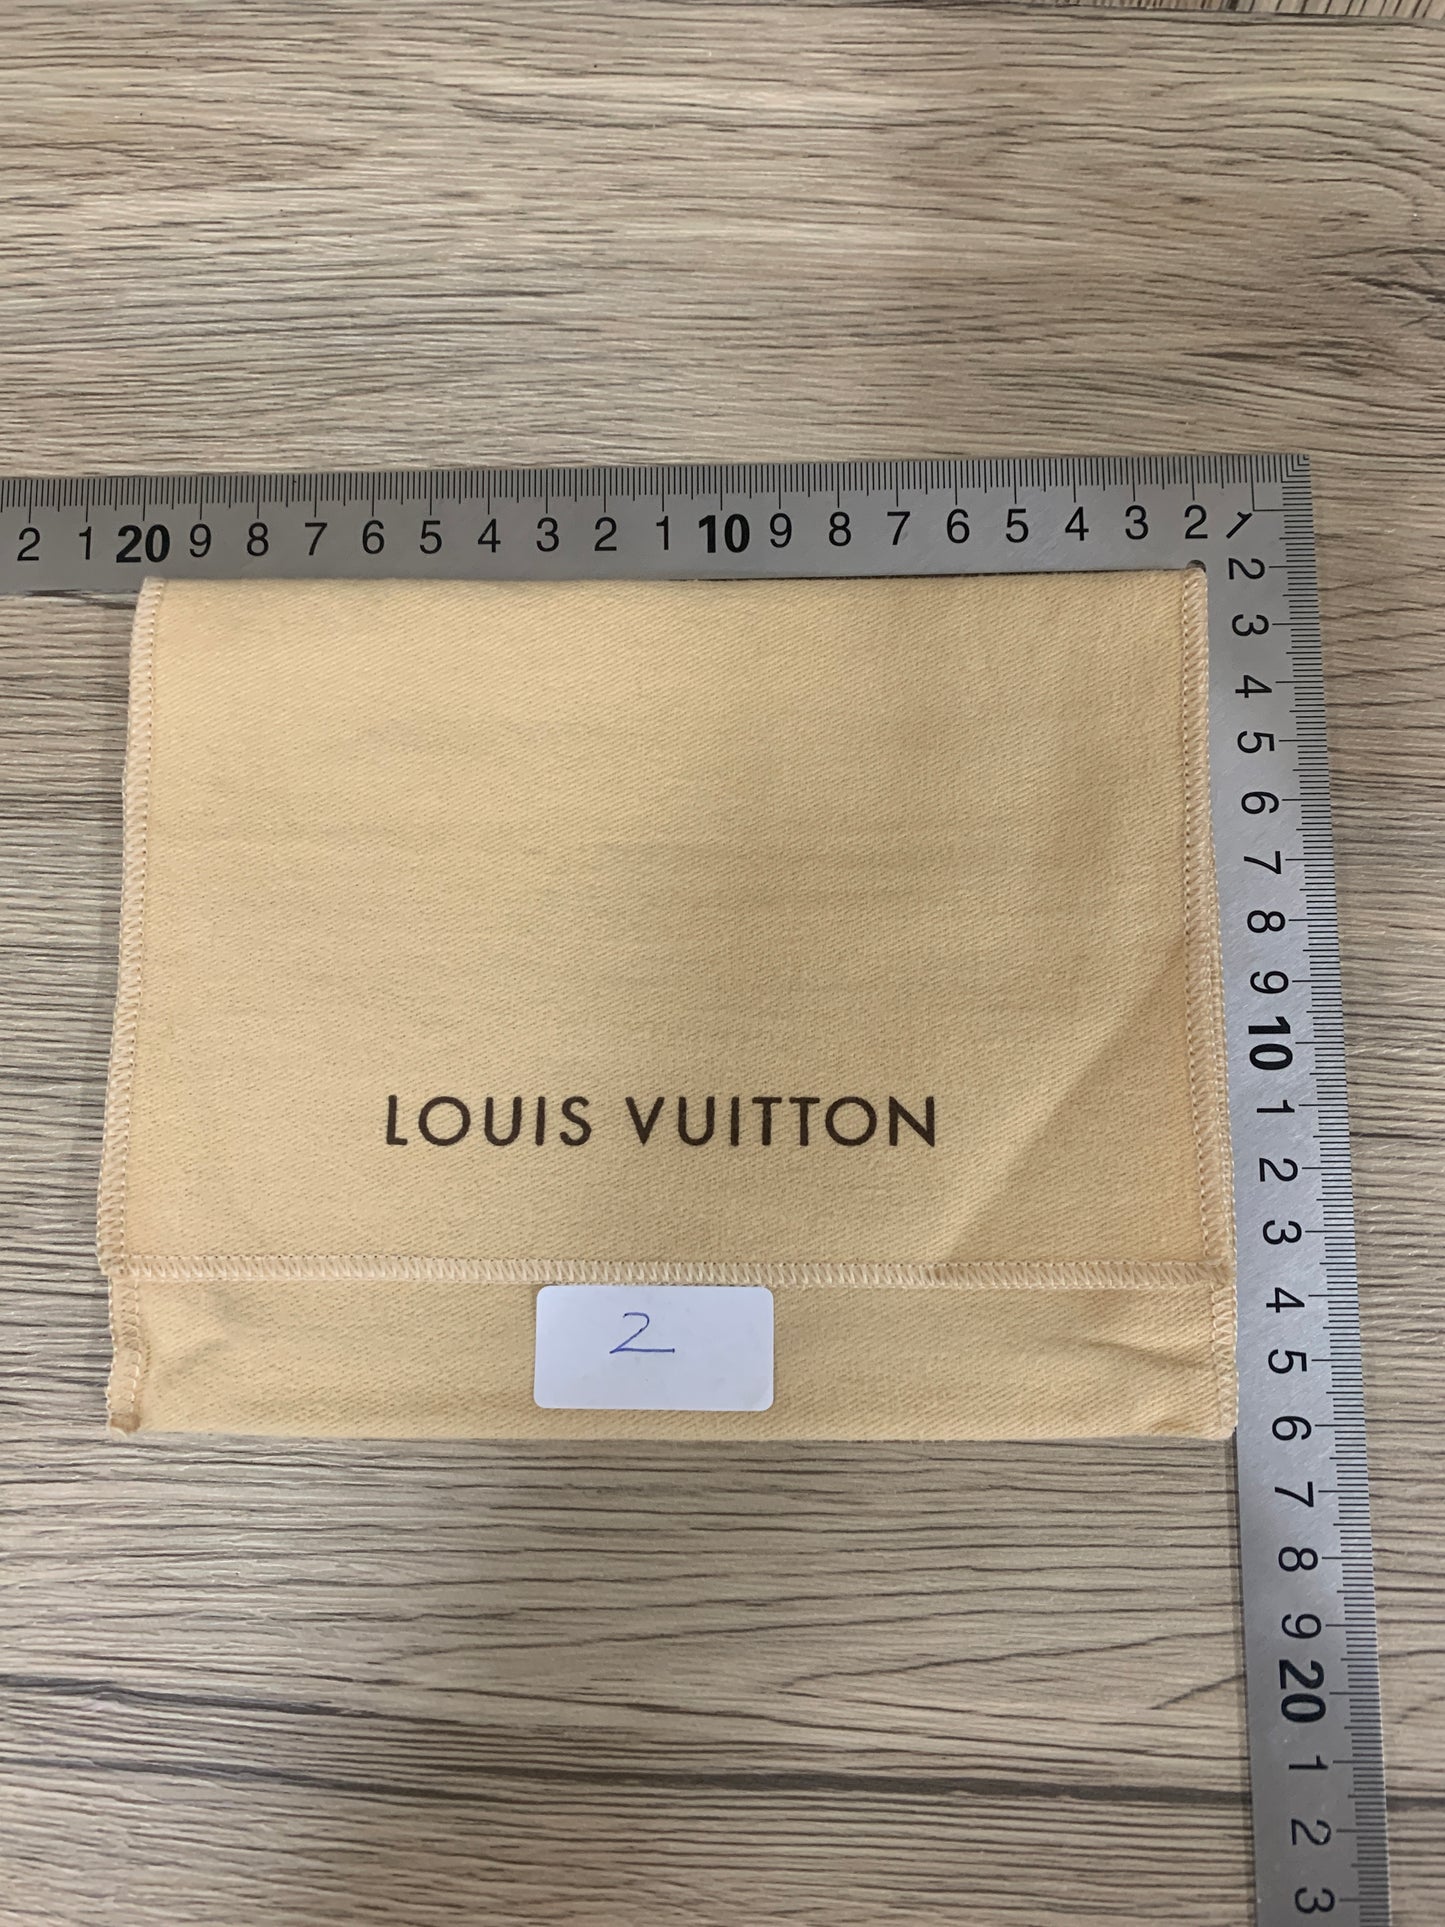 Authentic Beige LOUIS VUITTON shoe boots bag wallet purse dust bag cover LV handbag gift dust bag